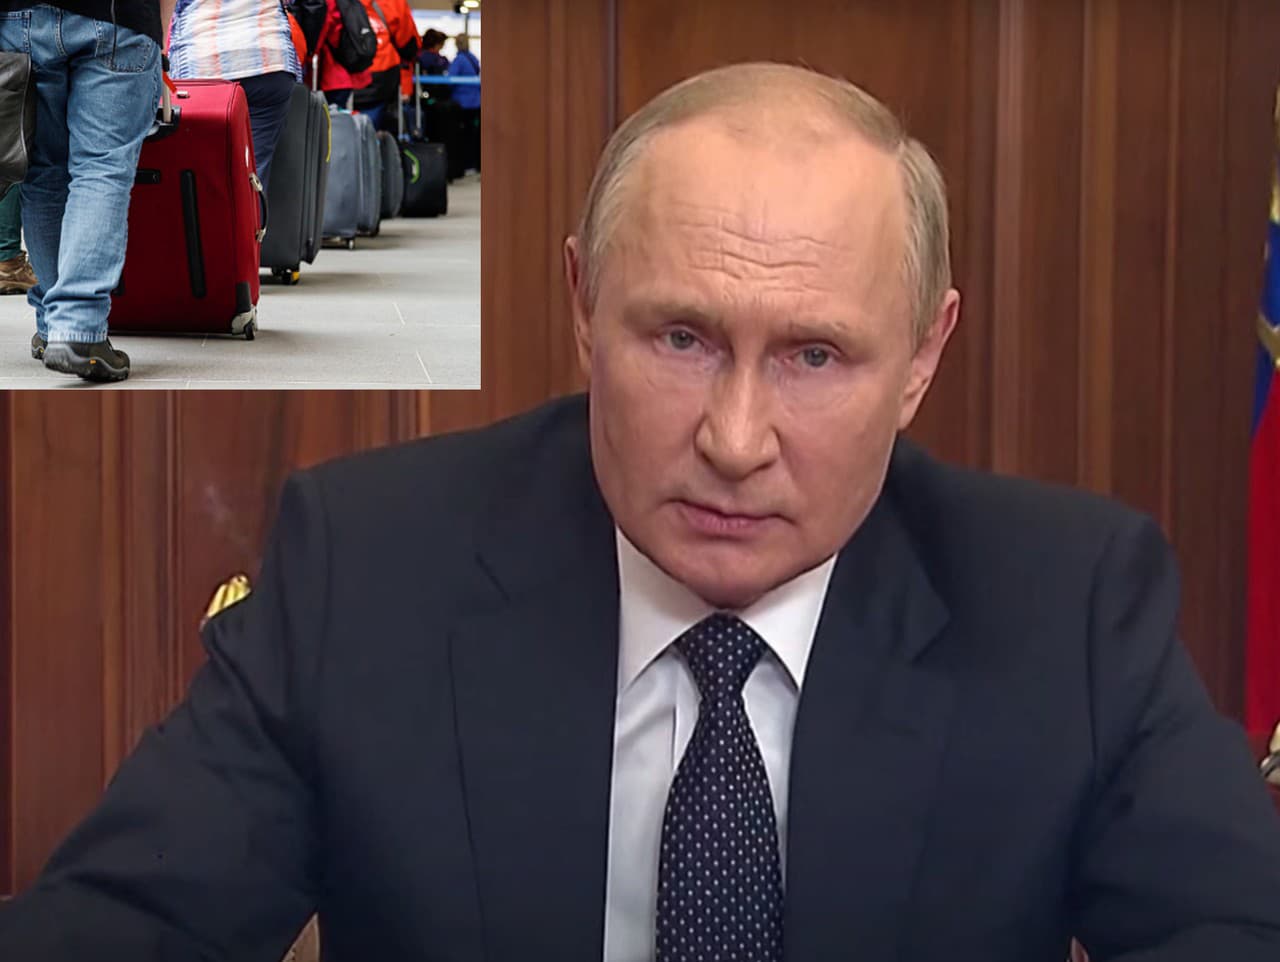 Vladimir Putin spomenul v príhovore mobilizáciu. Rusi do niekoľkých minút vykúpili všetky letenky. 